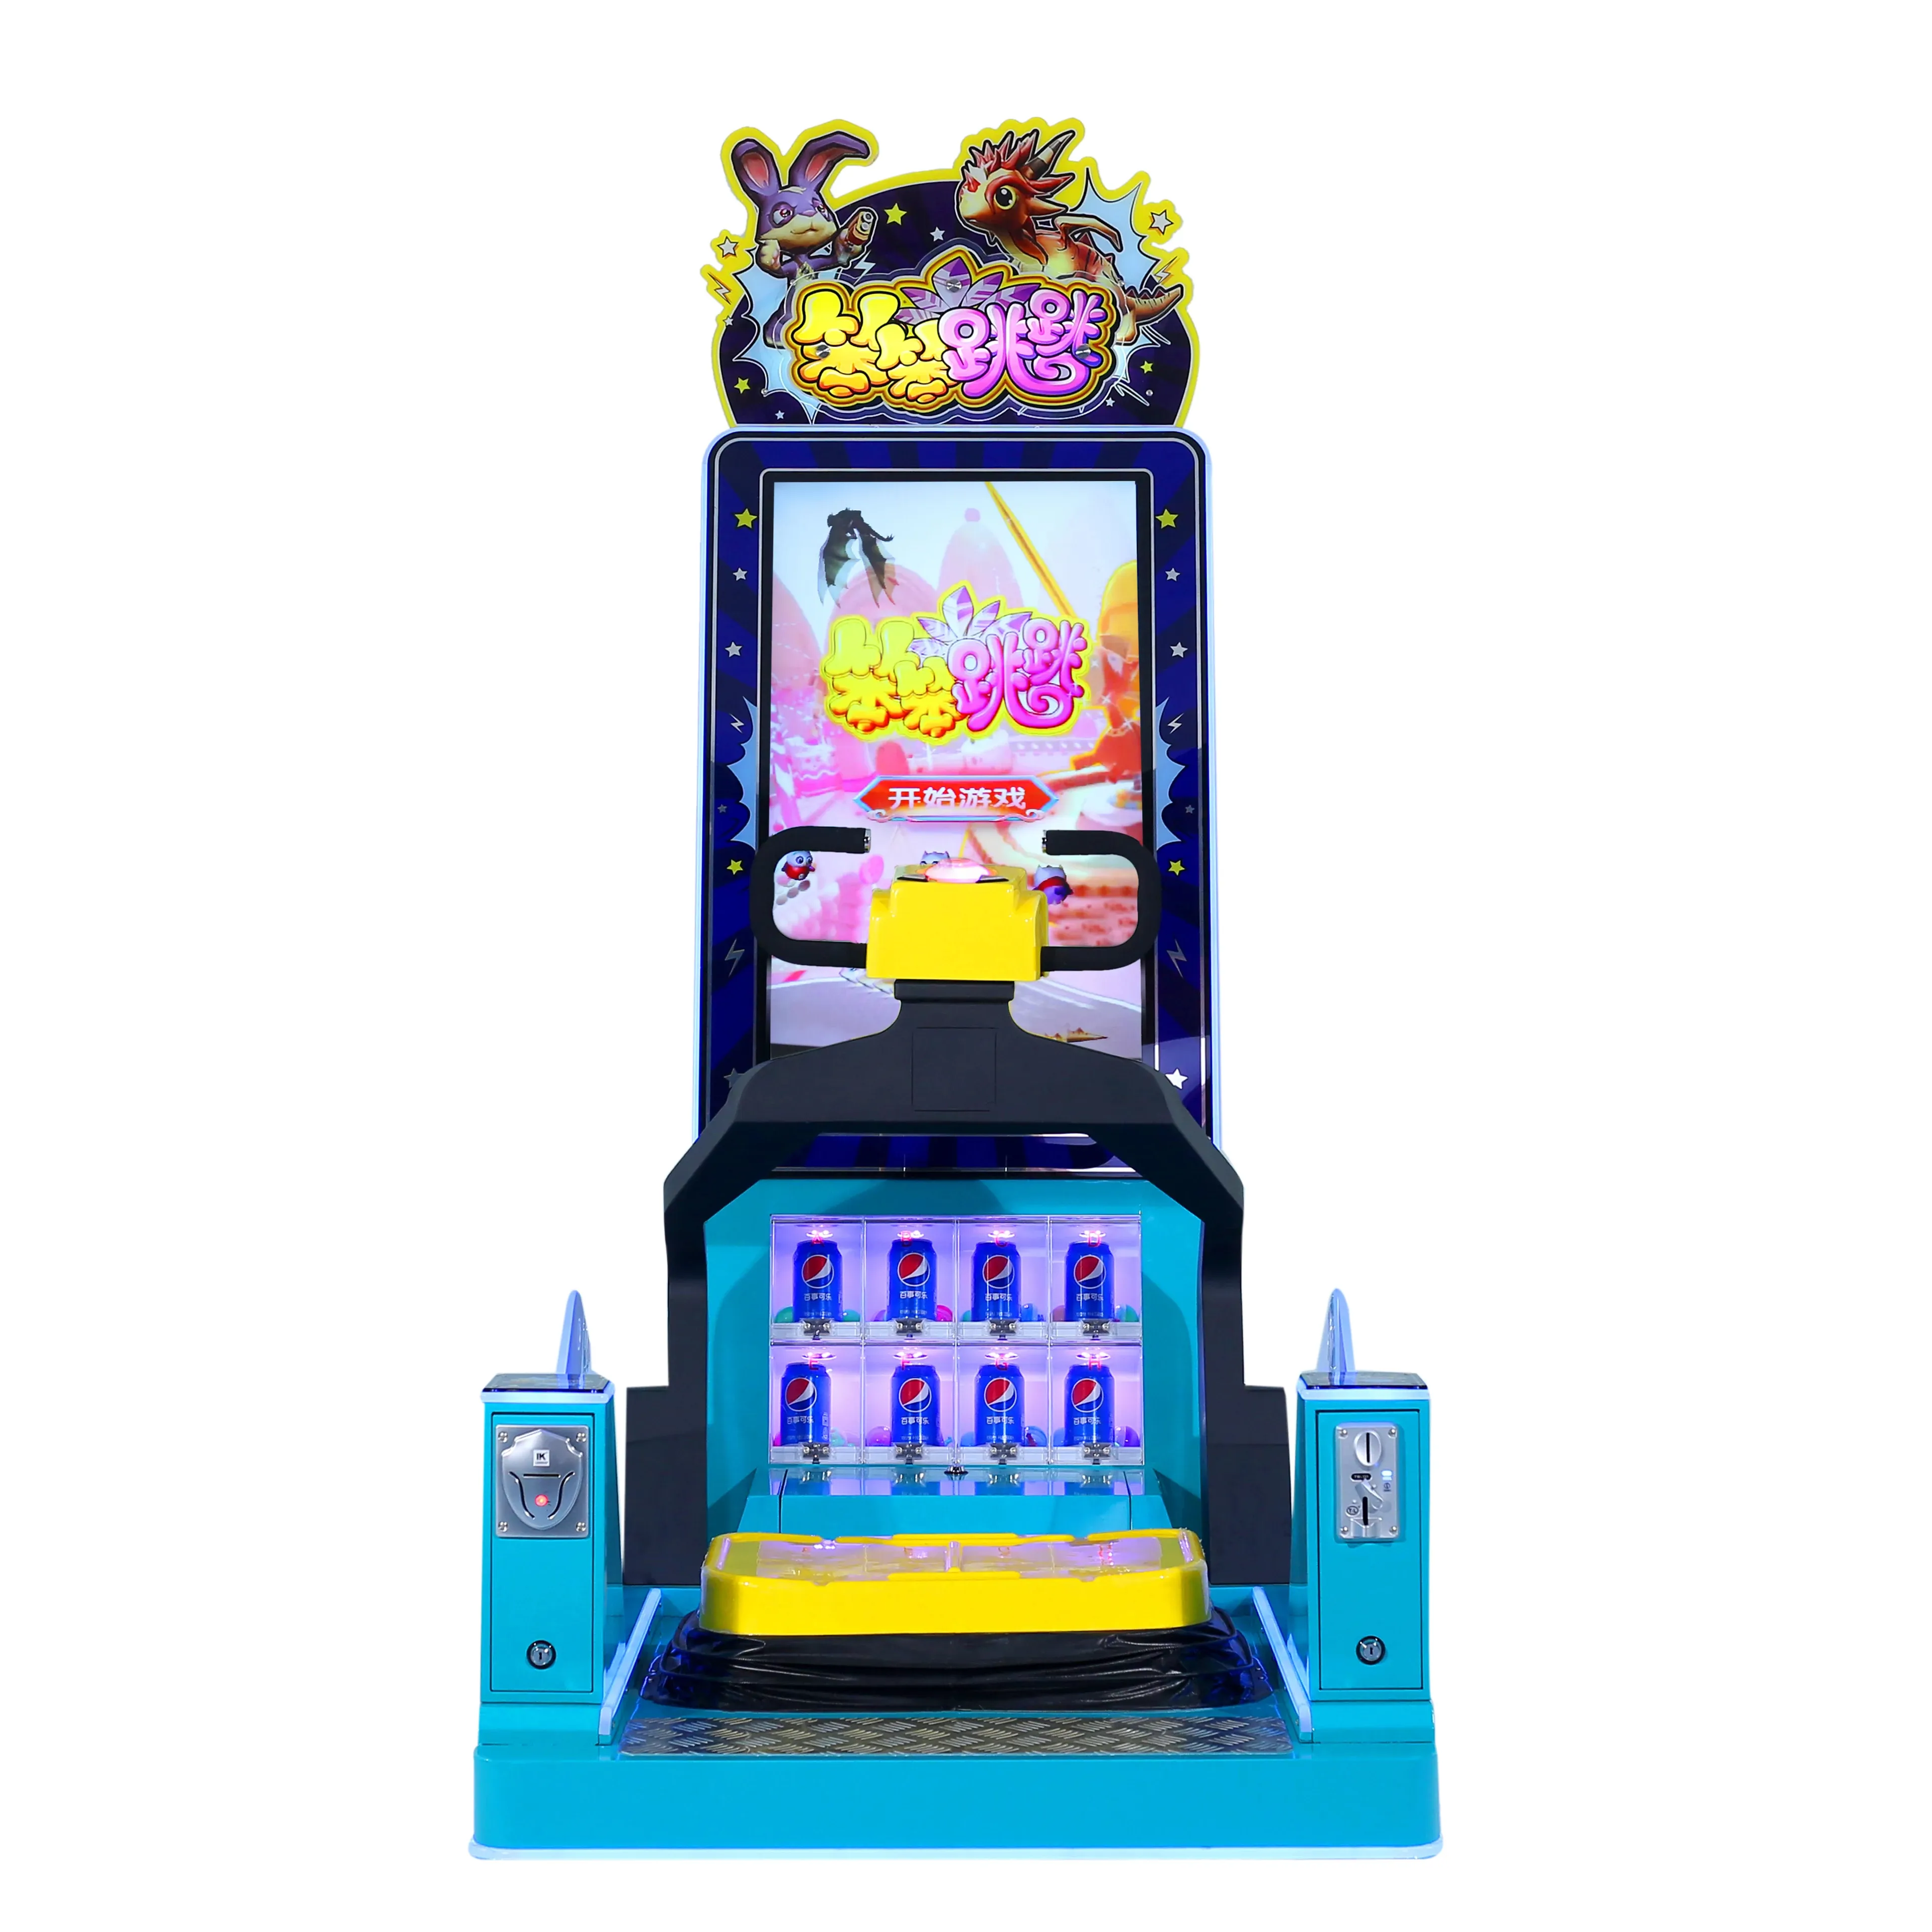 Düşük fiyat kolay dönüş çocuklar sikke işletilen arcade spor oyunu mutlu atlama ada atlama oyun makinesi satılık